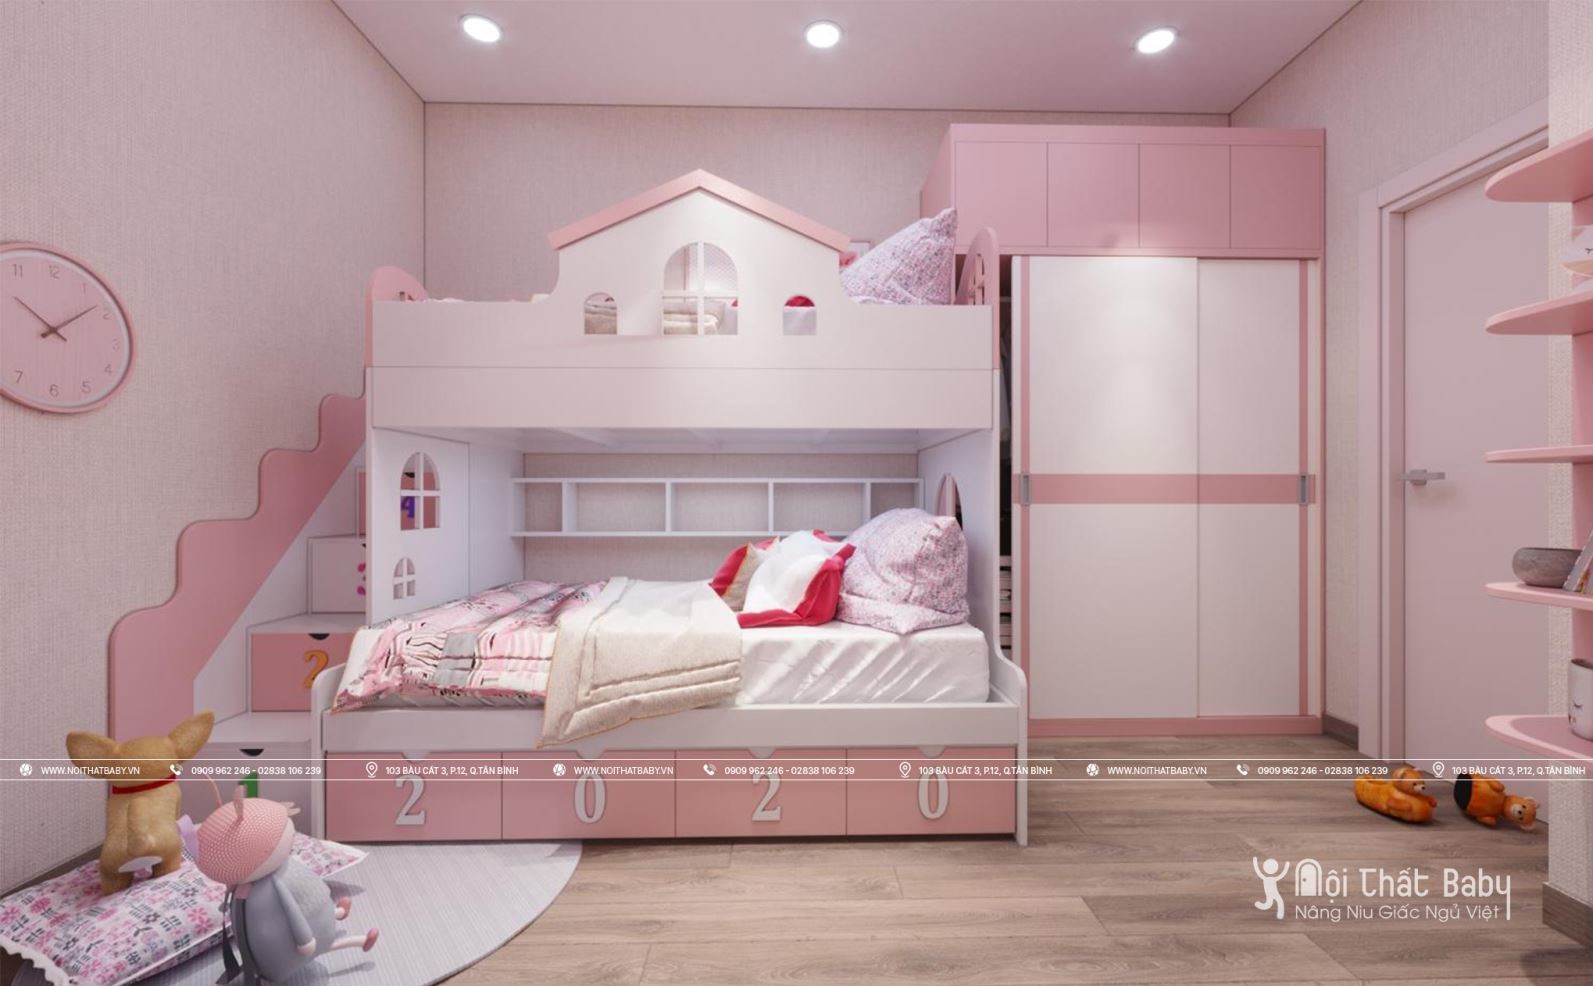 Giường tầng cho bé gái: Với một căn phòng bé, giường tầng là giải pháp tối ưu để tạo ra không gian lưu trữ và giúp tiết kiệm không gian phòng. Tại TPHCM, chúng tôi cung cấp nhiều mẫu giường tầng đáng yêu và tiện lợi cho bé gái của bạn. Bé gái của bạn sẽ yêu thích chiếc giường tầng đáng yêu và thú vị cho riêng mình.